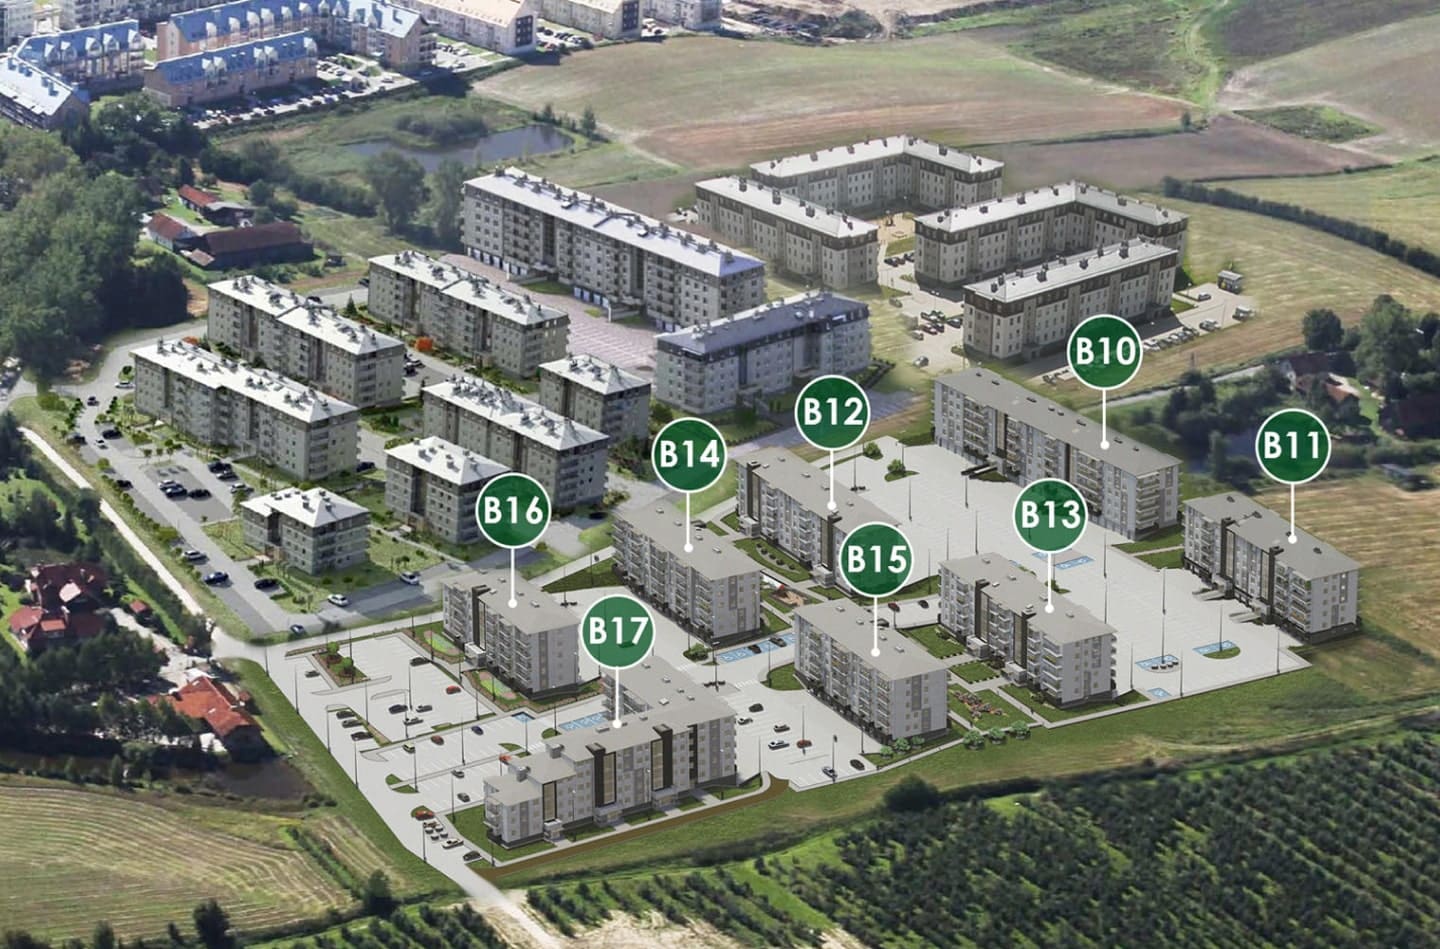 Dwa mieszkania w jednym, czyli inwestycyjny dwupak nieruchomości Olsztyn, Wiadomości, zShowcase